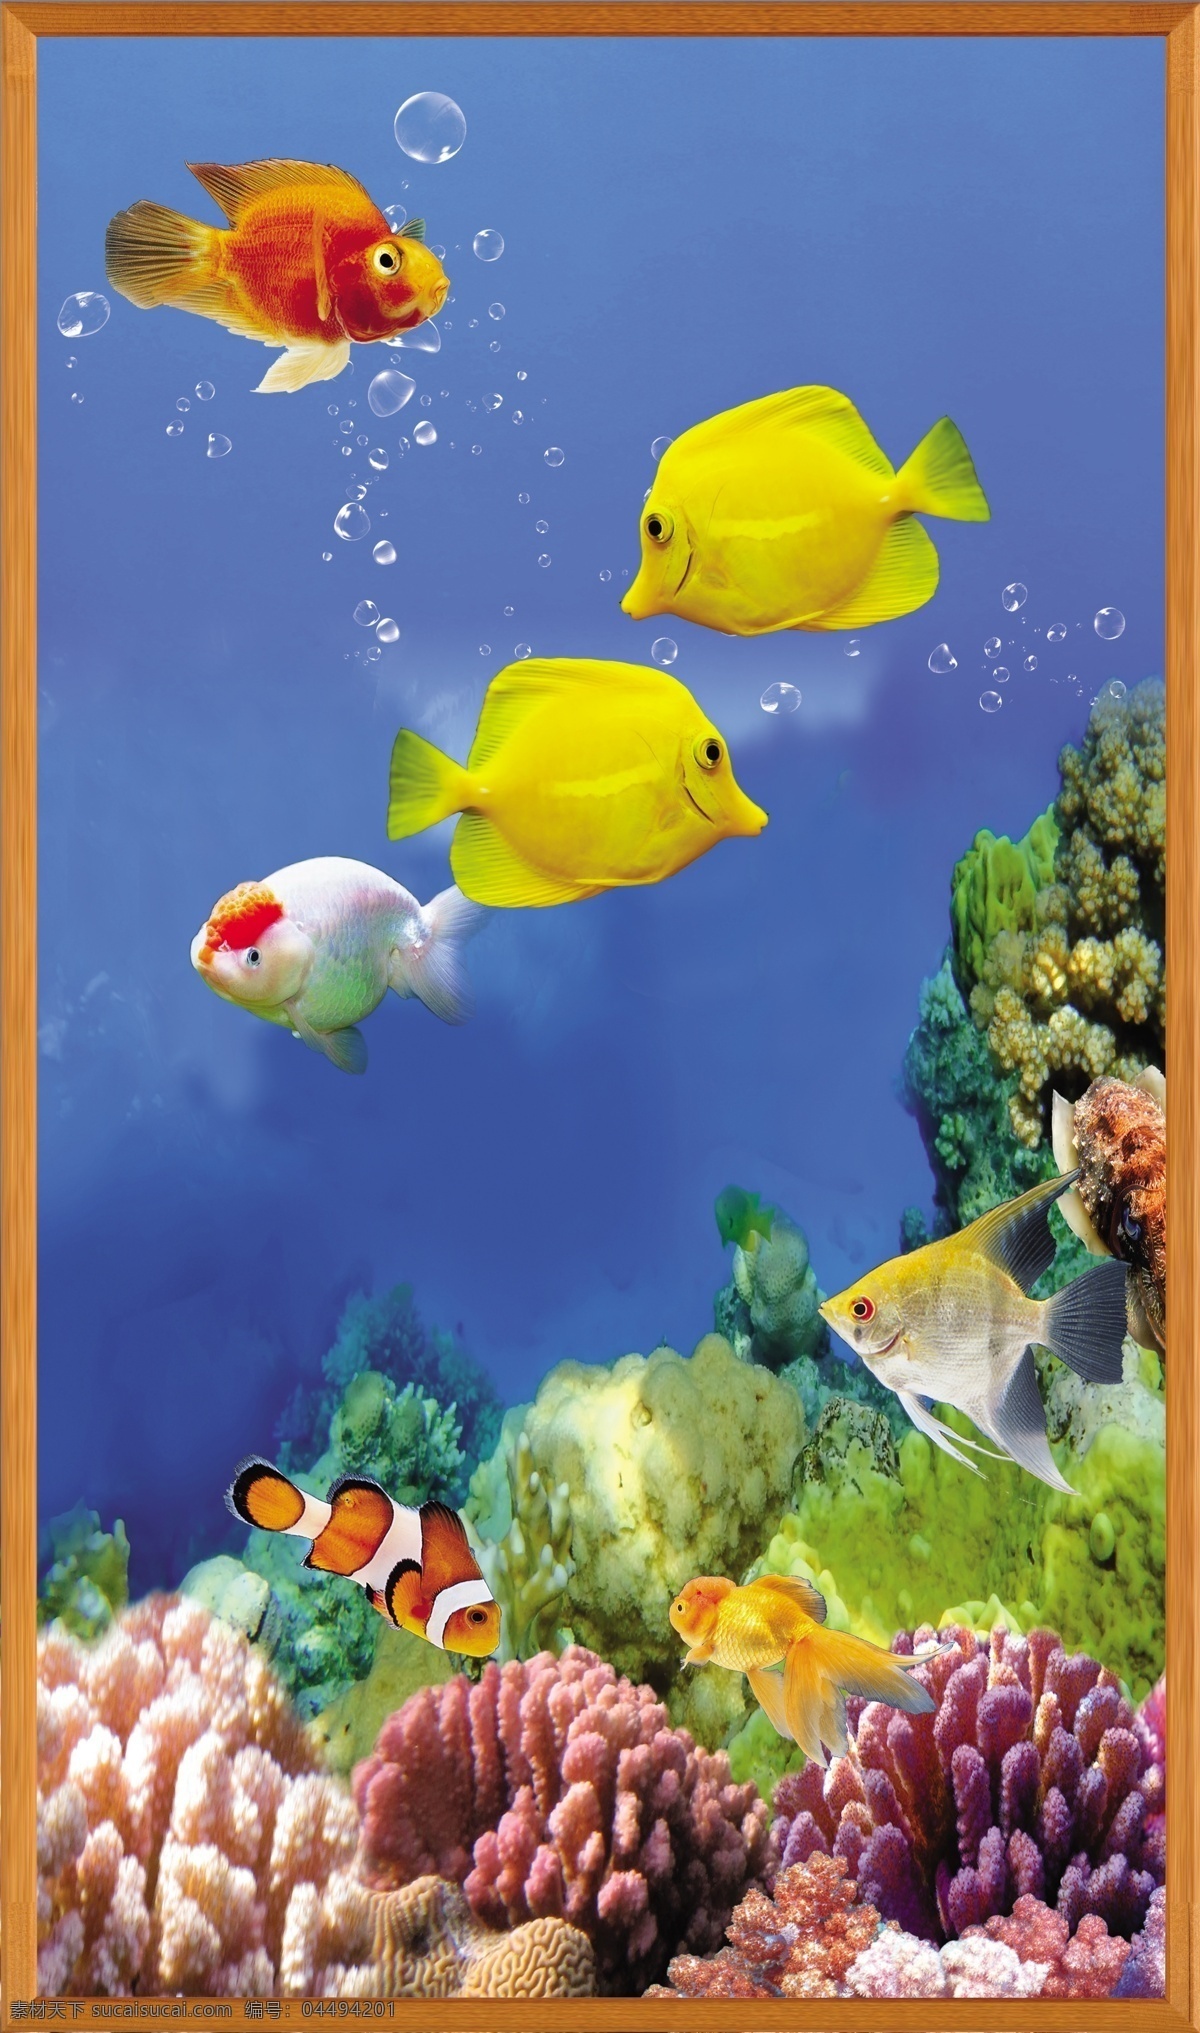 海底世界 海水 热带鱼 鱼类 鱼缸 鲤鱼 珊瑚 海底 蓝色背景 水泡 边框 鱼缸背景 水 生活百科 餐饮美食